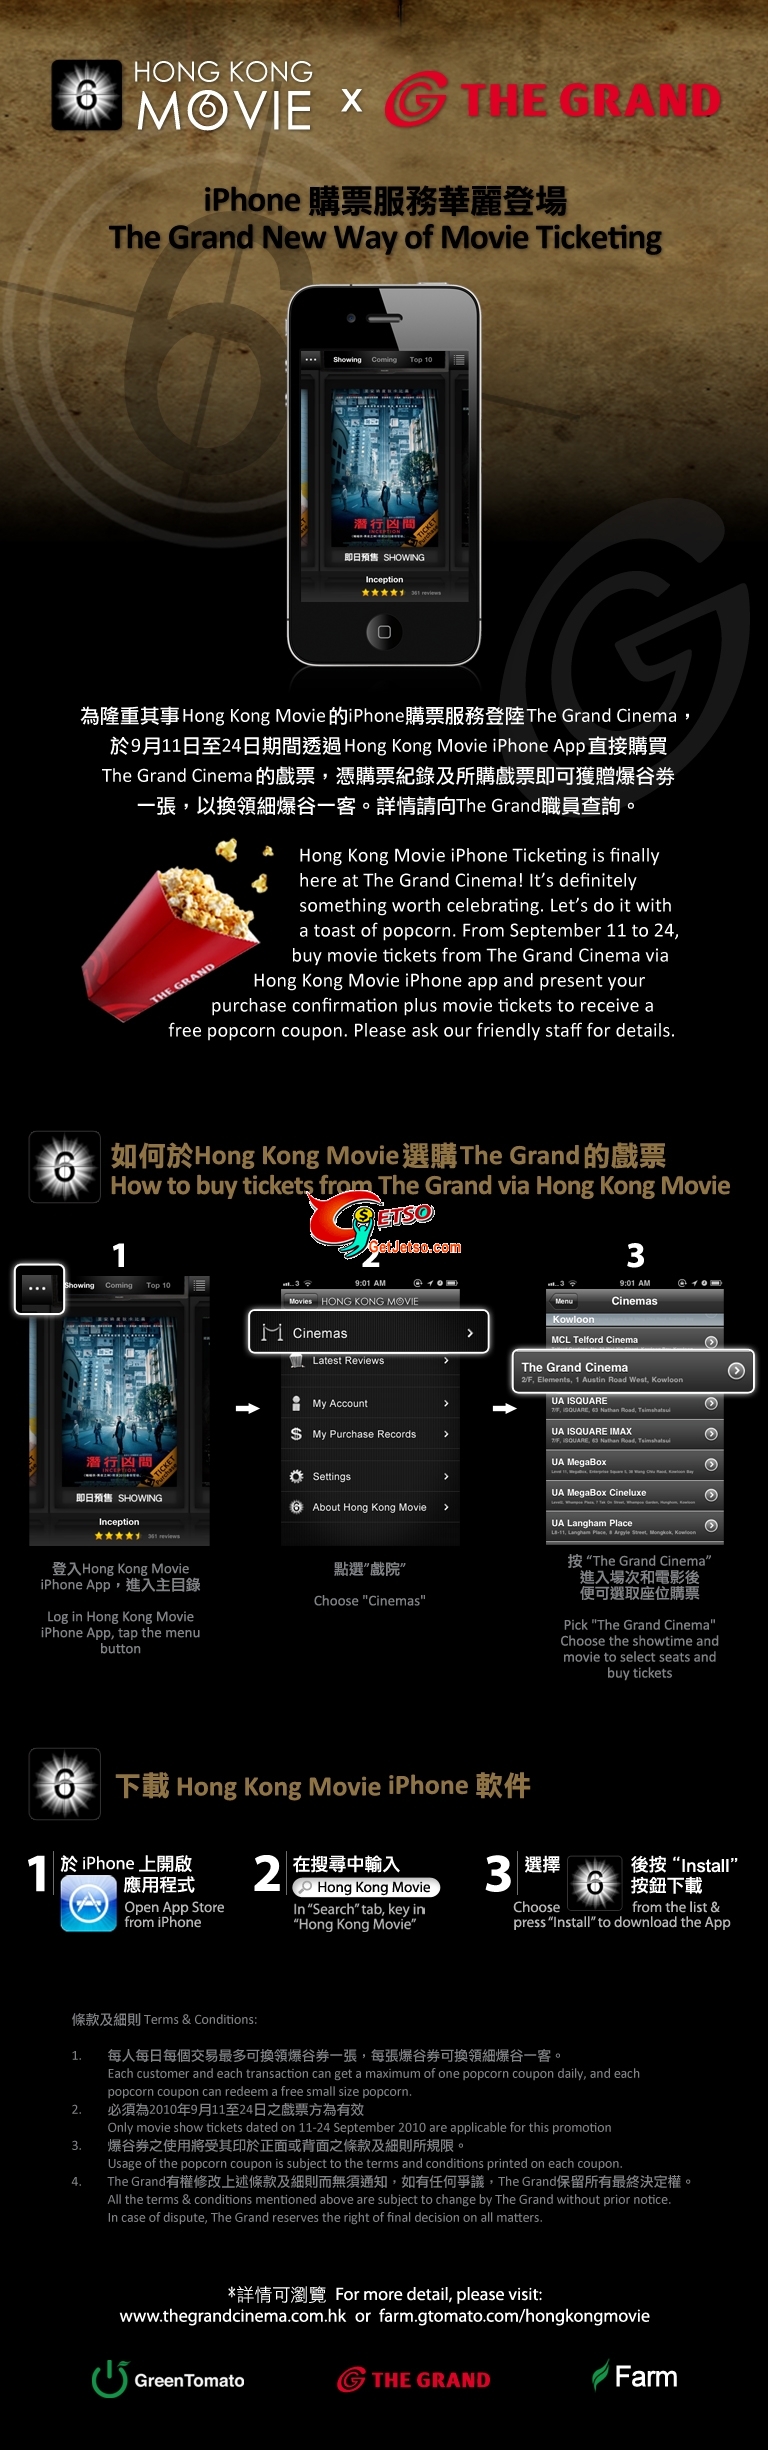 用HK Movie iPhone App買The Grand Cinema戲票可獲爆谷券(至10年9月24日)圖片1